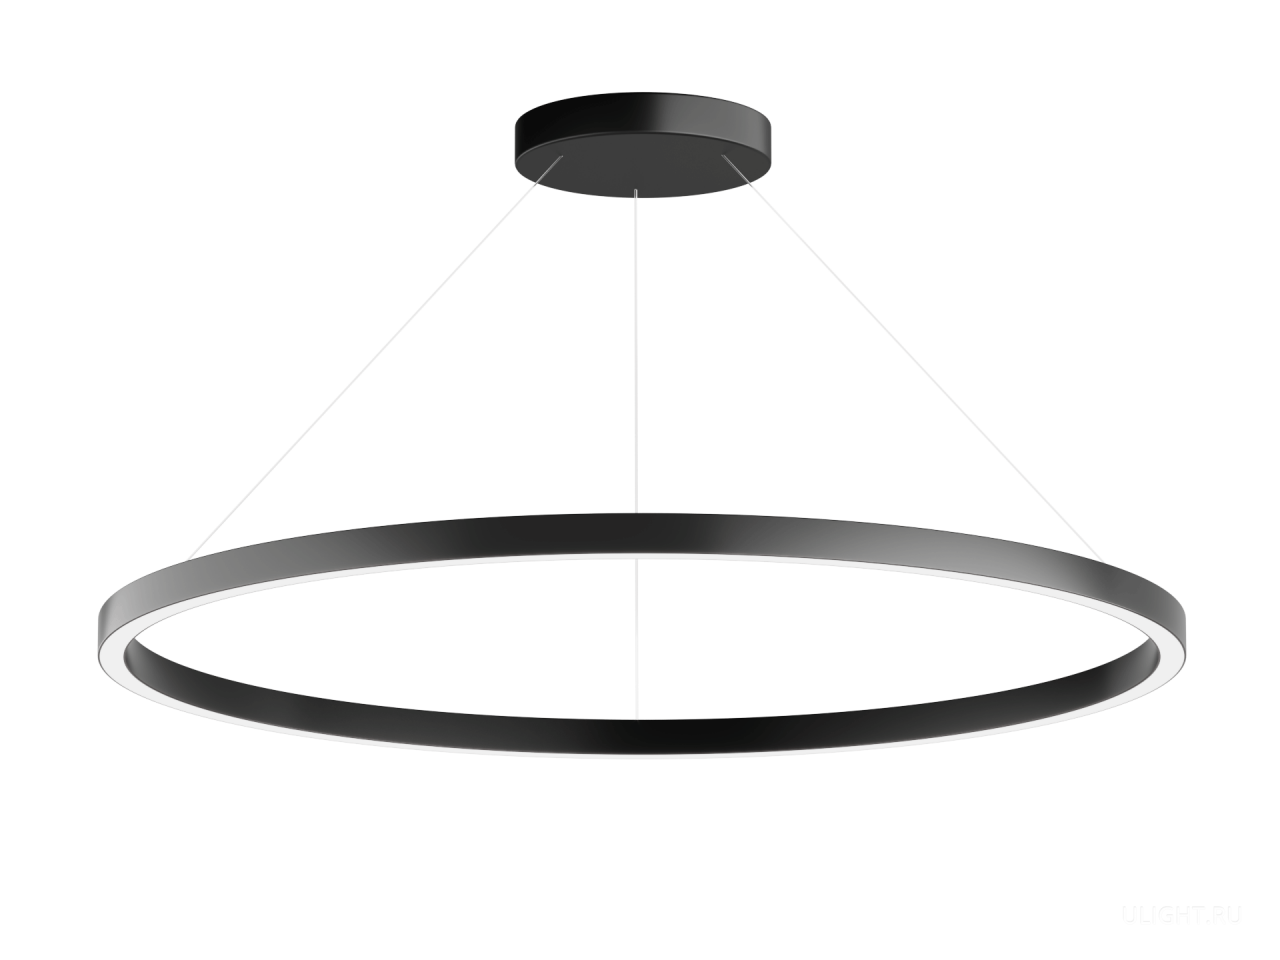 Подвесной светодиодный светильник в форме кольца диаметром от 42,5 см до 155 см. Современная, стильная люстра – дизайнерский светодиодный светильник в форме кольца. Эта дизайнерская люстра идеально подходит для интерьеров в стиле модерн, лофт, хайтек.